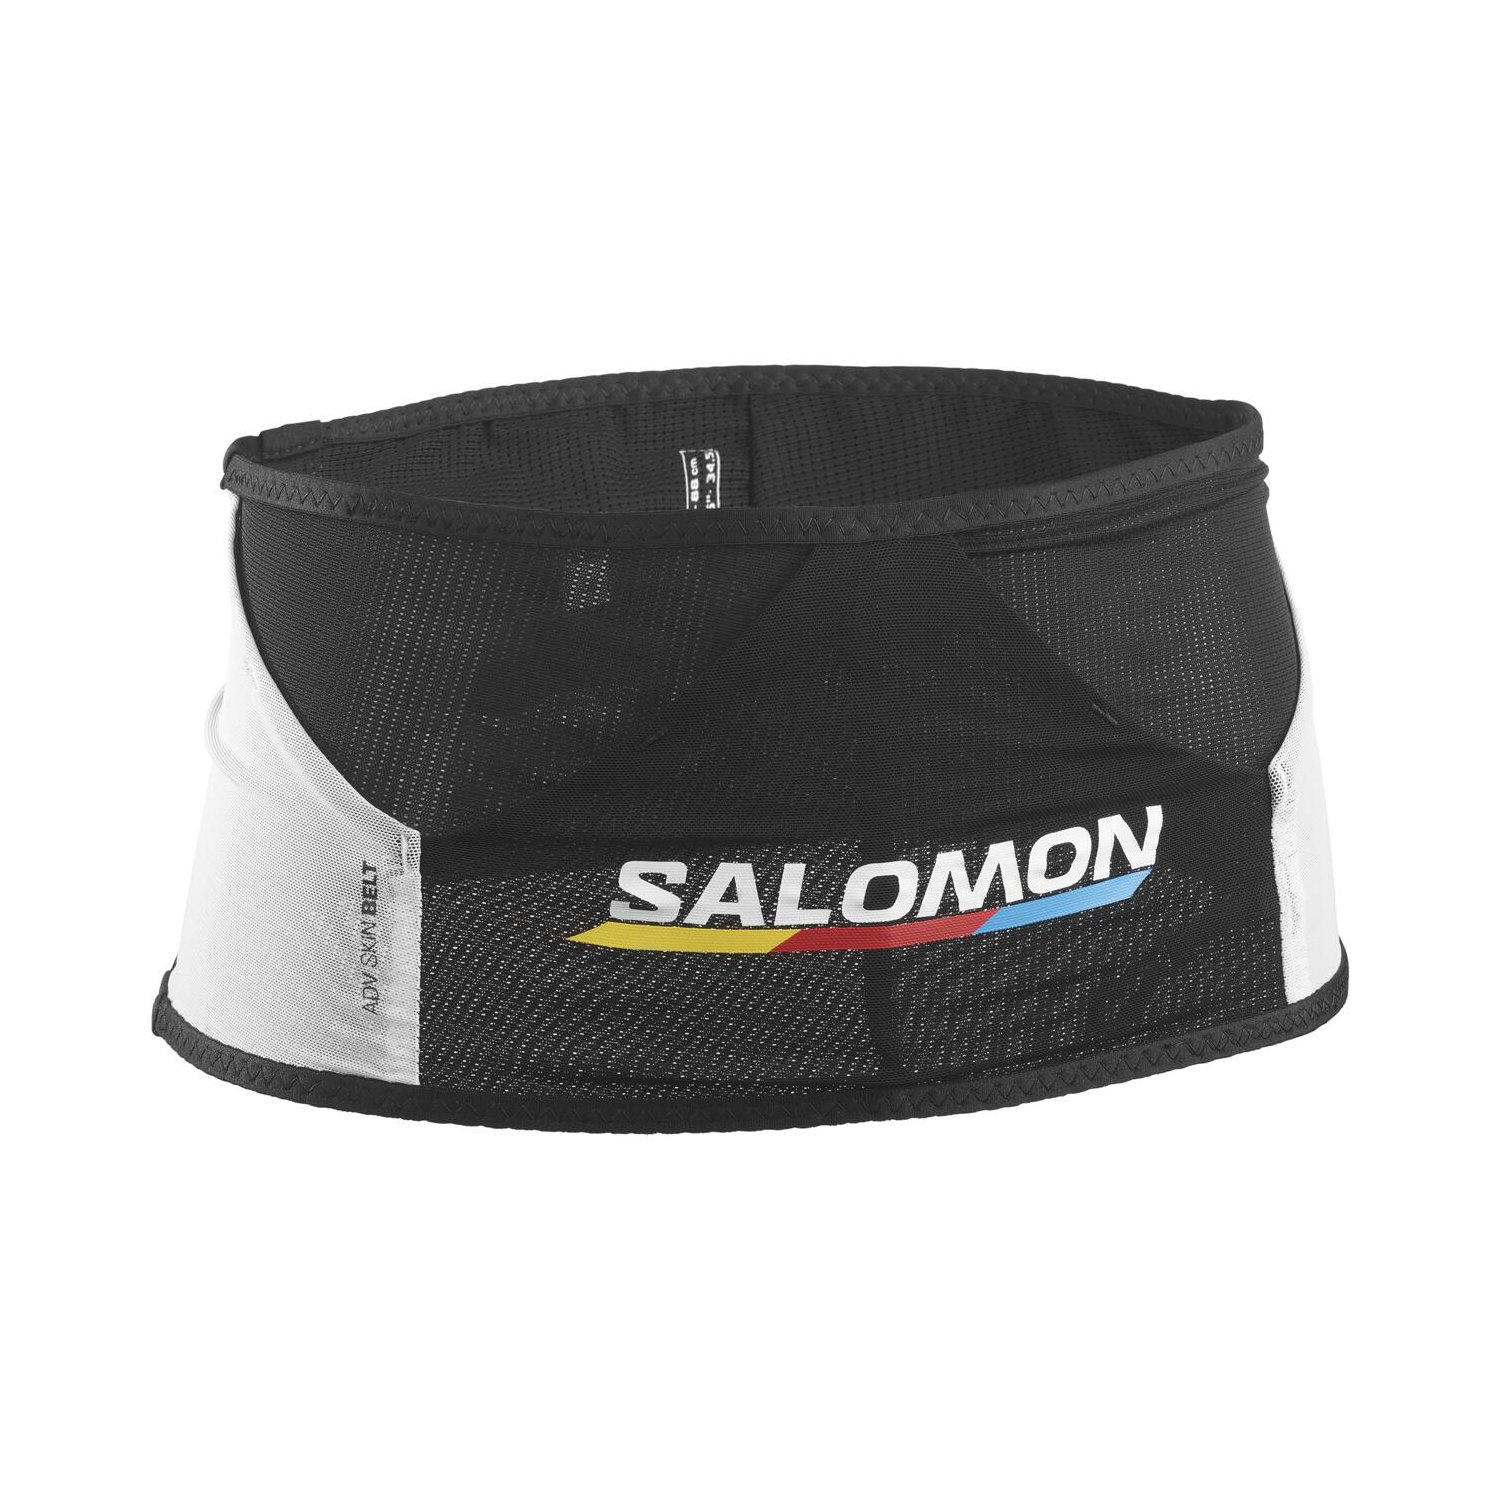 Salomon ADV Skin Race Flag Bel Çantası - Siyah - 1